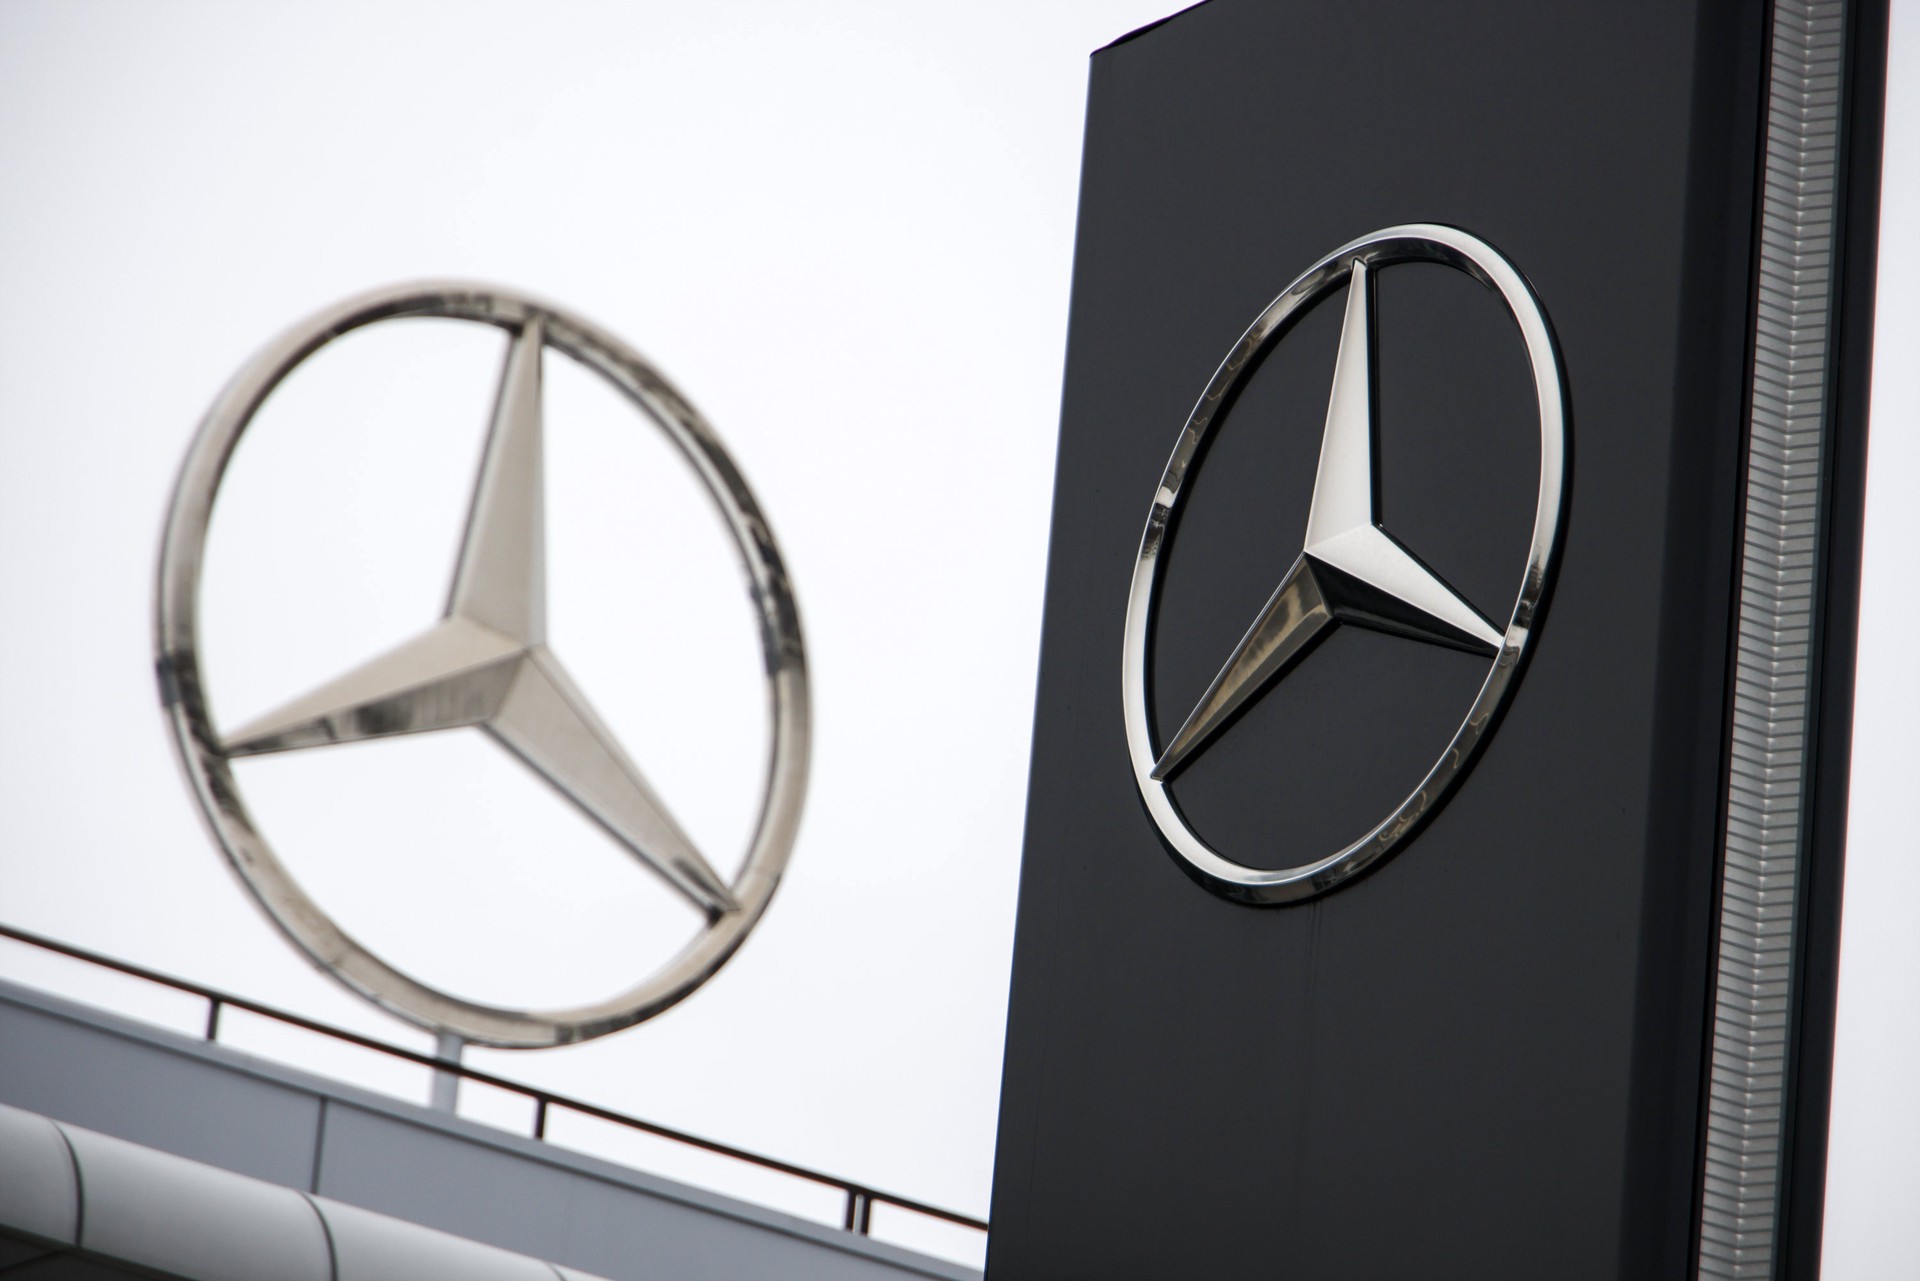 УНИАН: Депутат от партии Зеленского купил два Mercedes G 400 по 266 долларов каждый